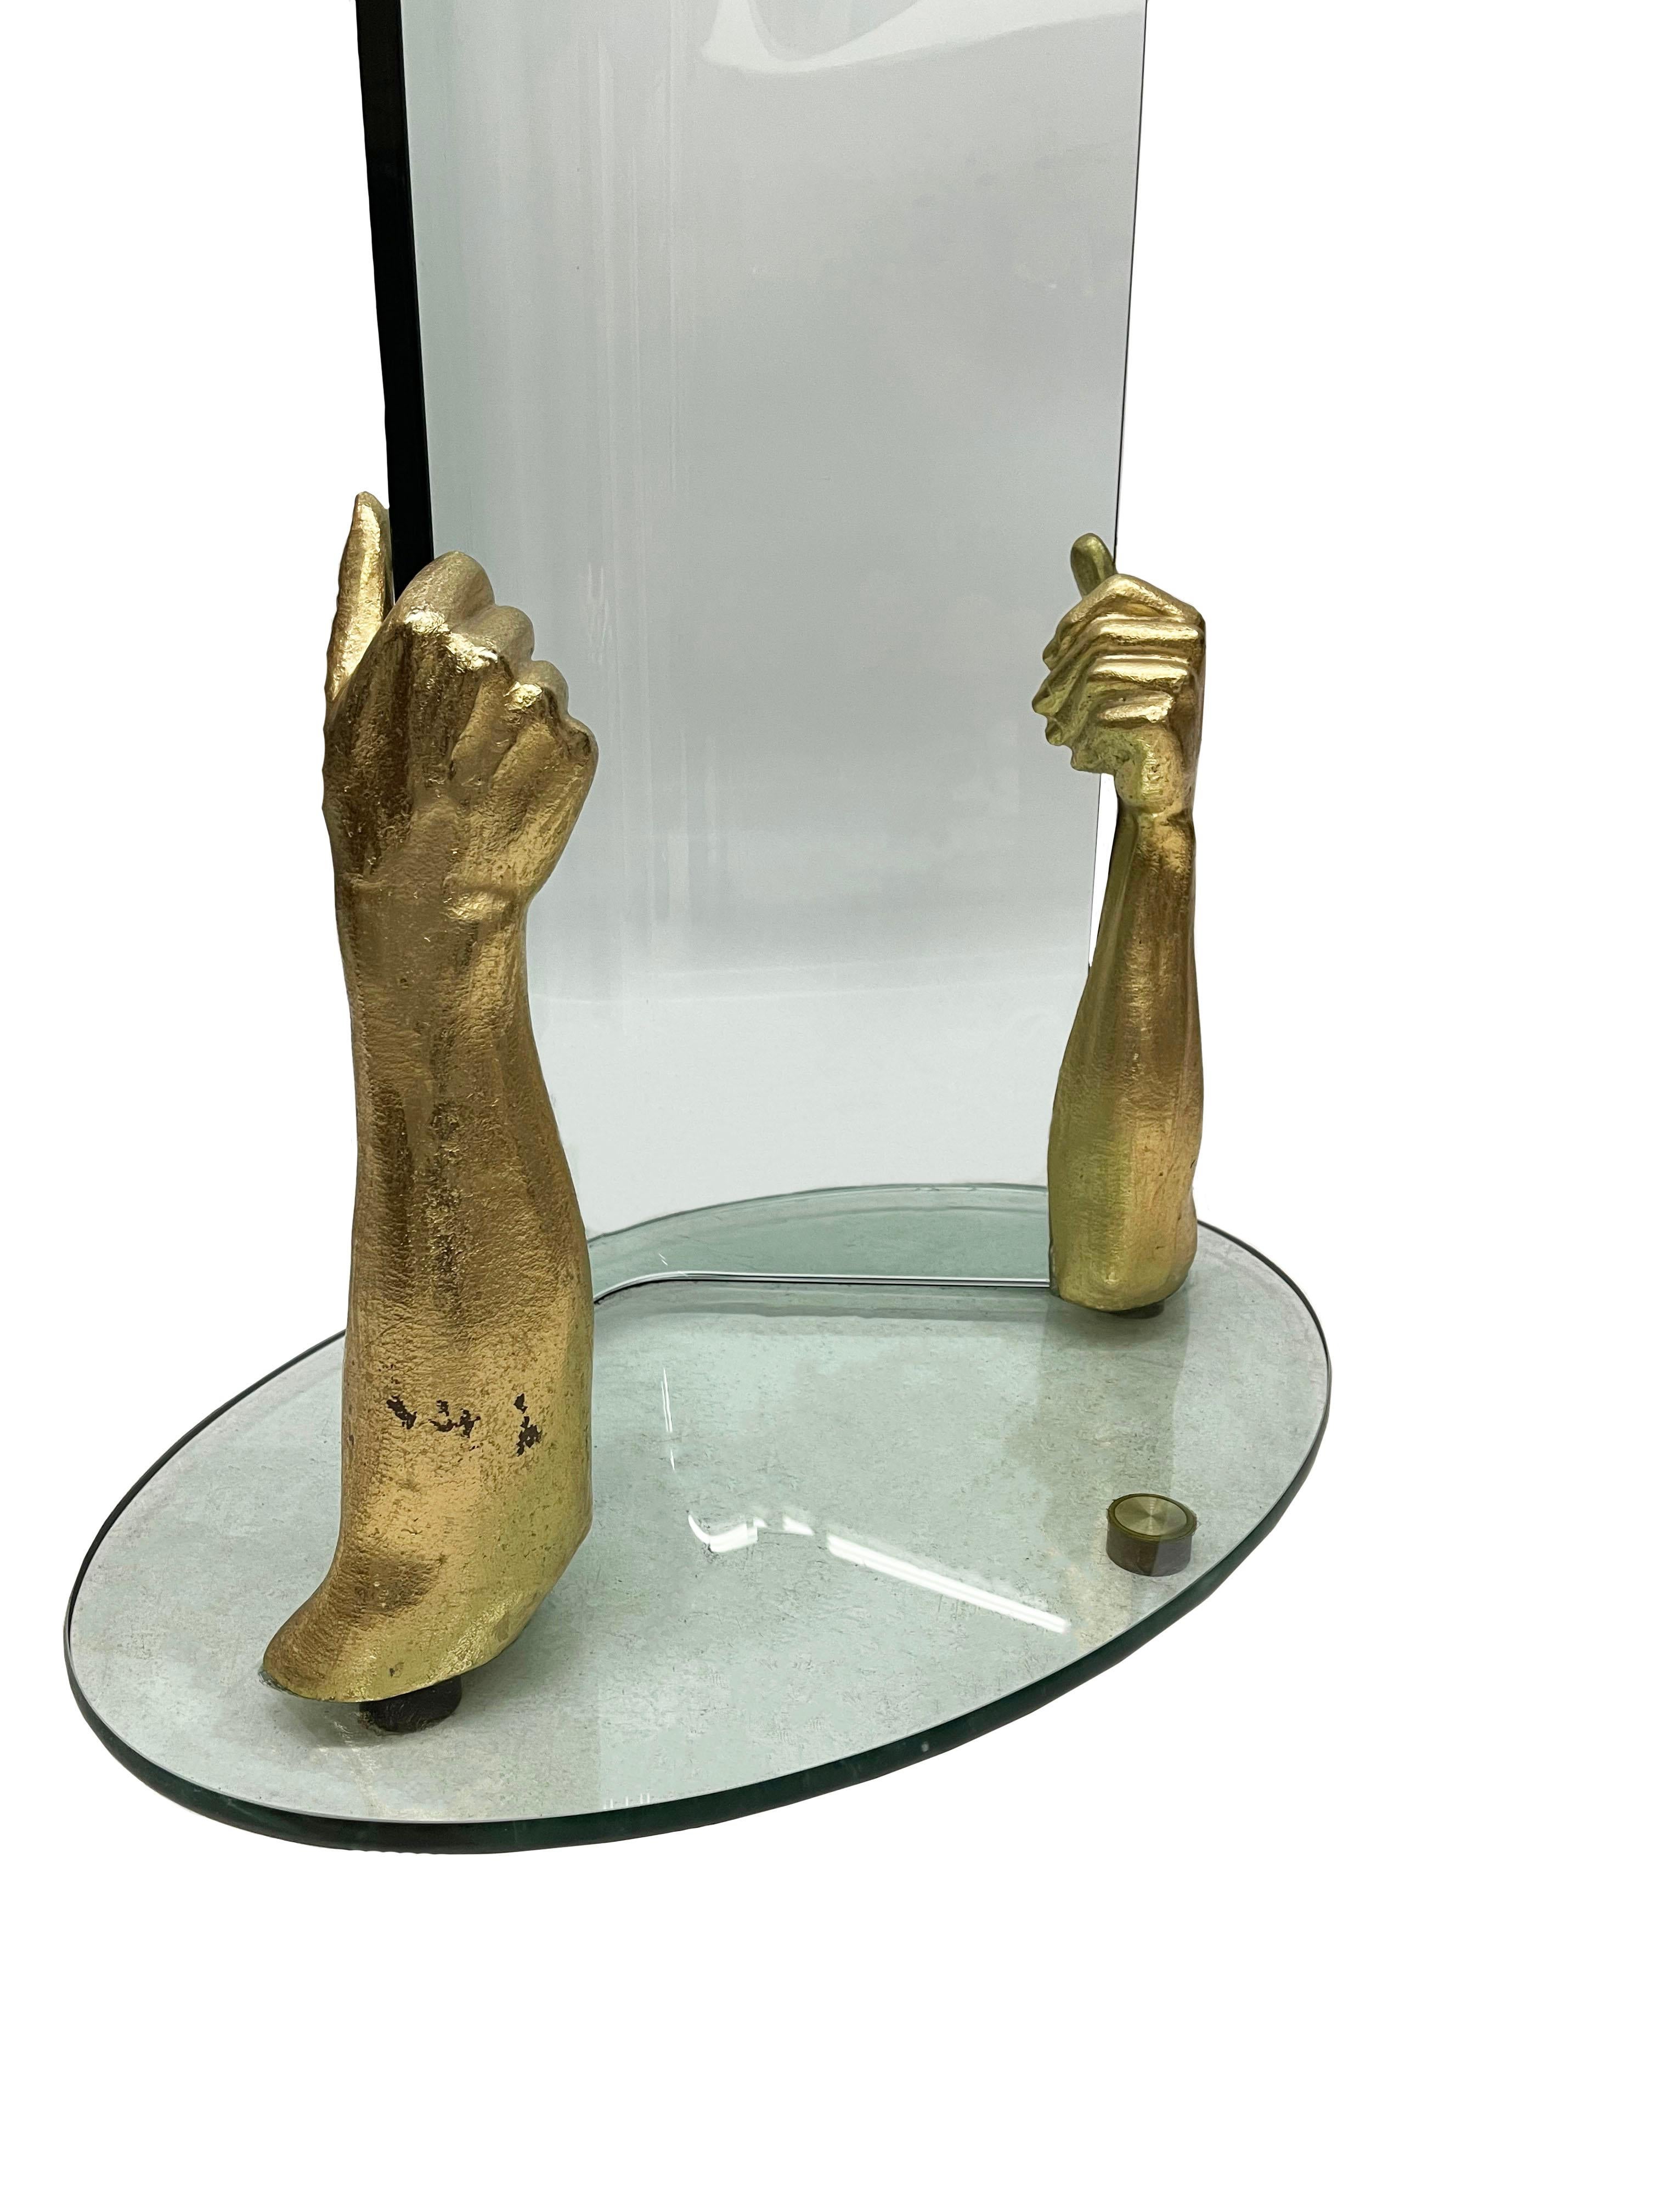 Standgarderobe aus Glas und Bronze

Moderner Garderobenständer aus dickem Glas in Form eines Baumes, mit gebogenem Glas. Unten 2 bronzene, vergoldete Arme, die als Hände das Glas hochhalten. Die Garderobe ist 181,5 cm hoch, der Fuß ist oval und